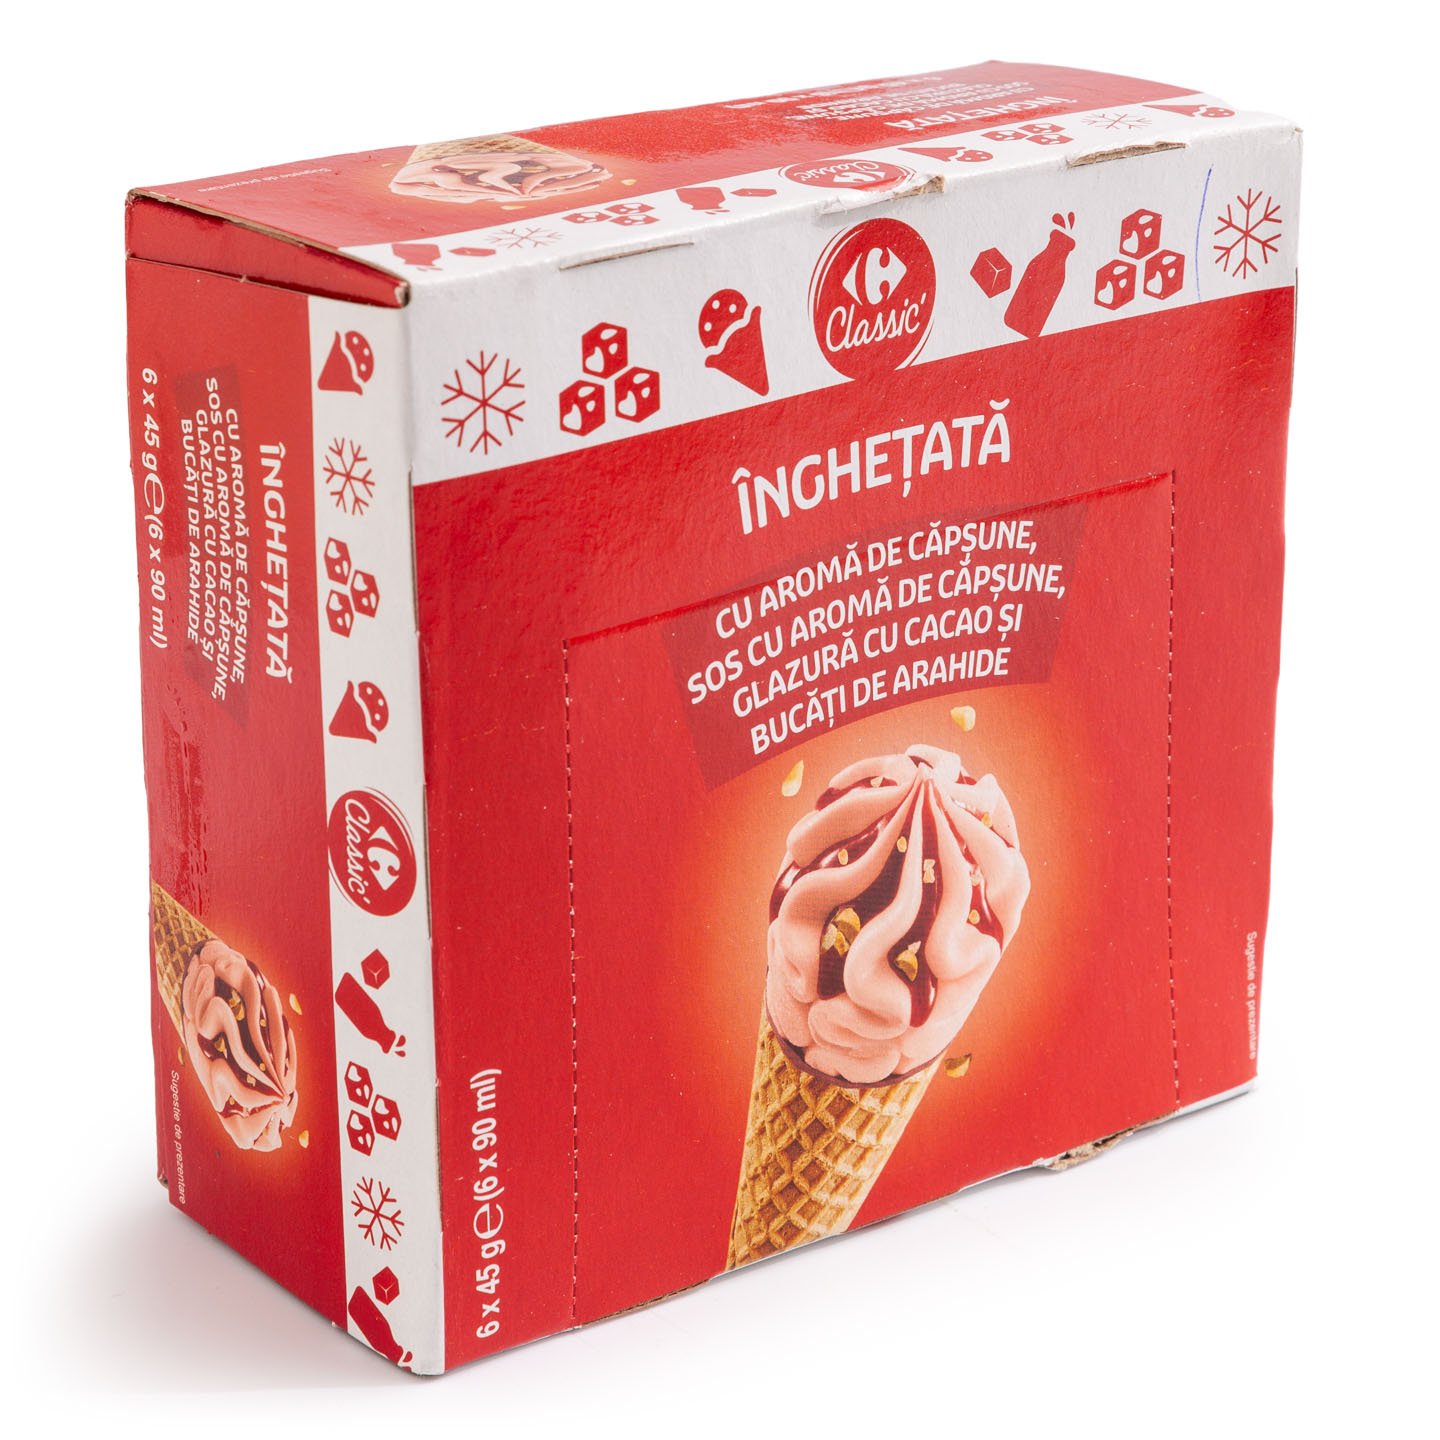 Înghețată la cornet căpșuni și arahide Carrefour Classic 6x90 ml, per pachet